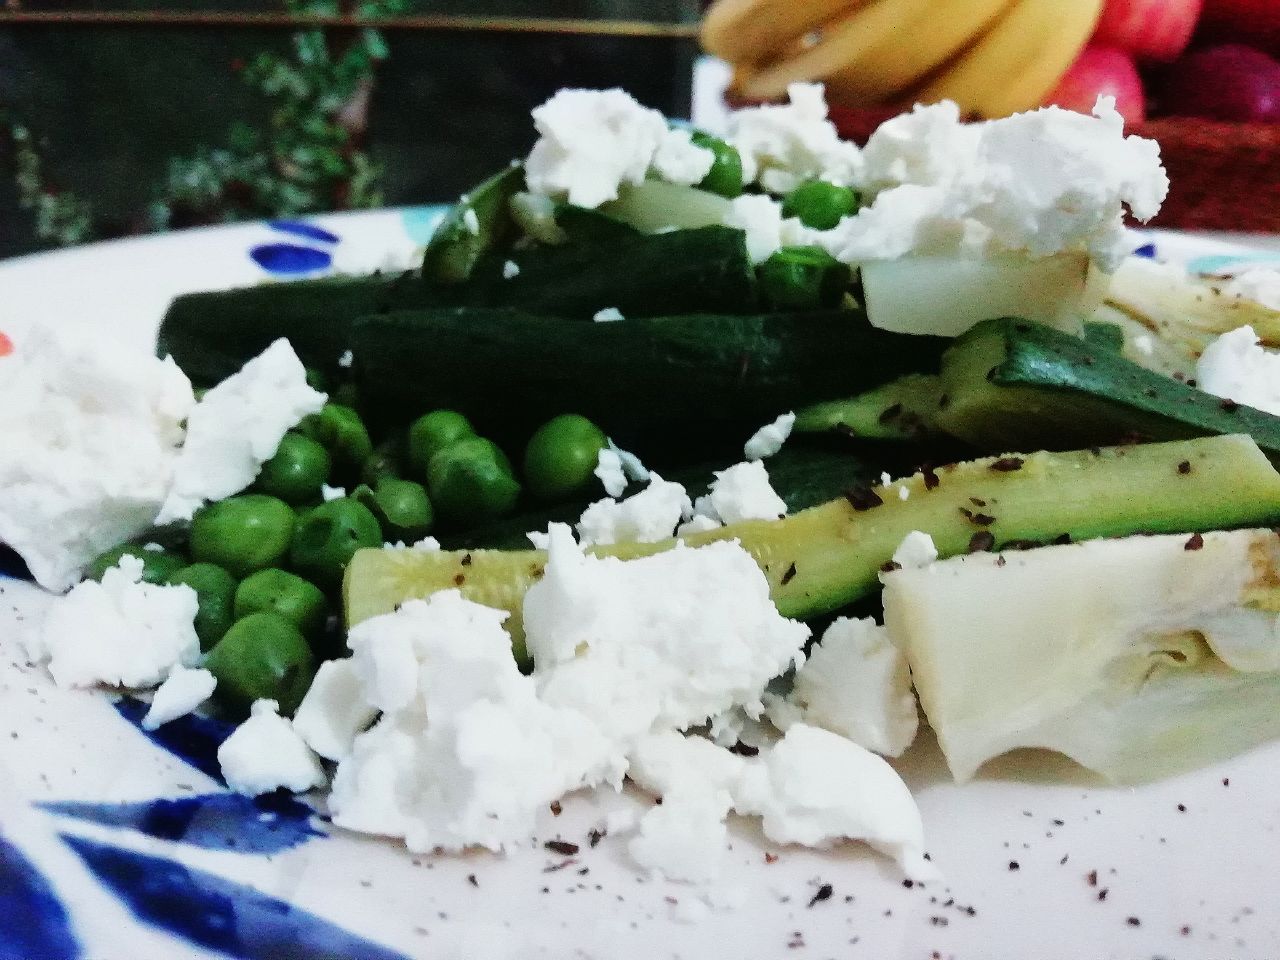 Ricette a base di verdure senza glutine e senza burro: insalata di finocchi piselli zucchine e feta greca!